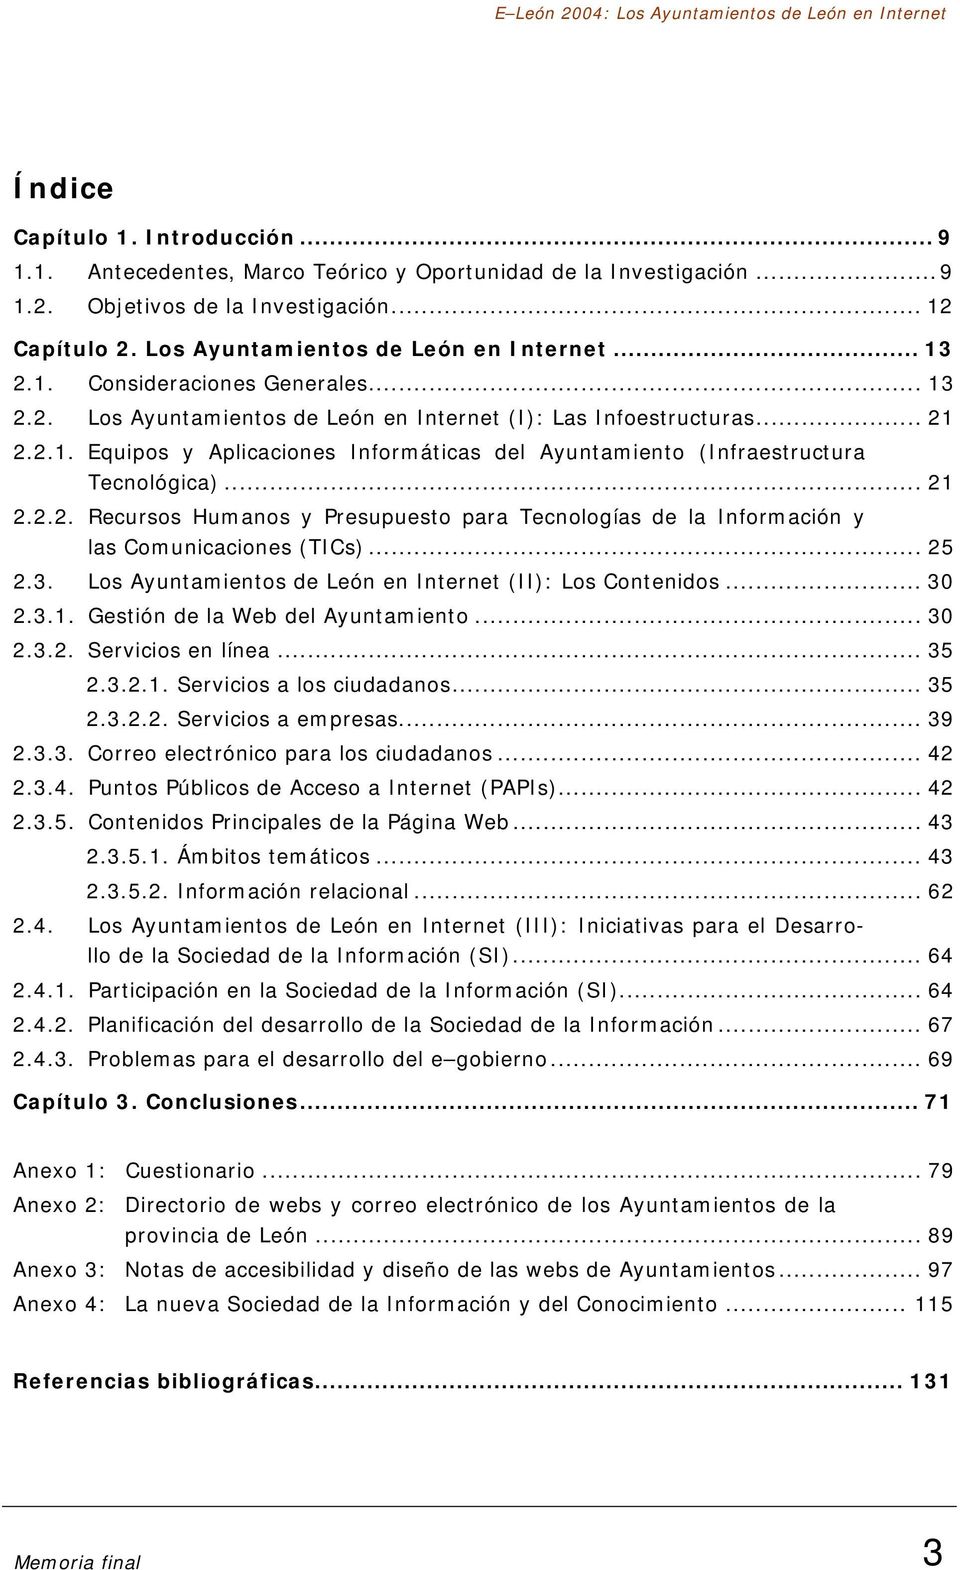 ..... Recursos Humanos y Presupuesto para Tecnologías de la Información y las Comunicaciones (TICs)... 5.3. Los Ayuntamientos de León en Internet (II): Los Contenidos... 3.3.. Gestión de la Web del Ayuntamiento.